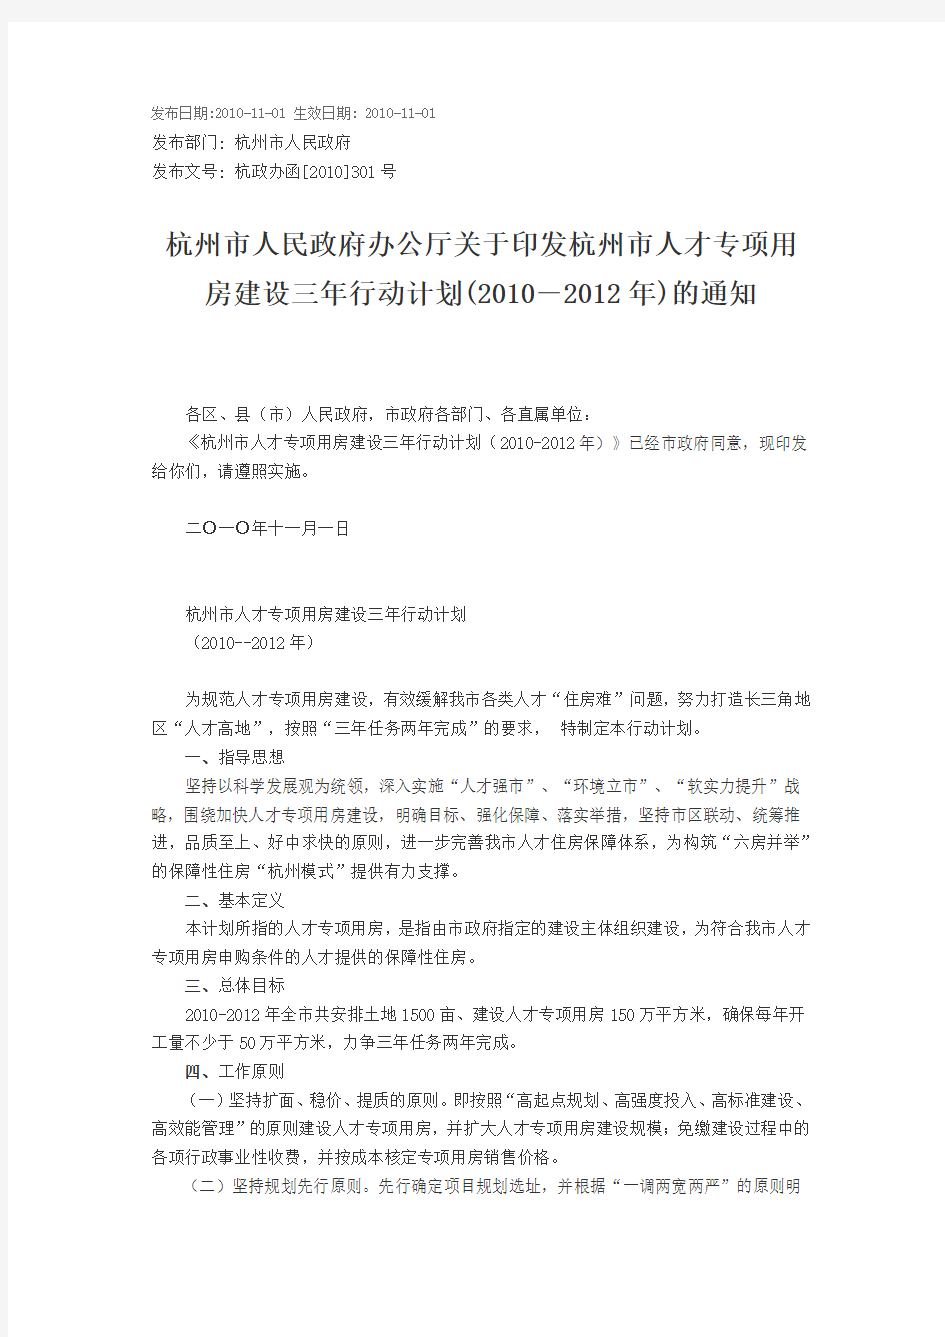 杭州市人民政府办公厅关于印发杭州市人才专项用房建设三年行动计划